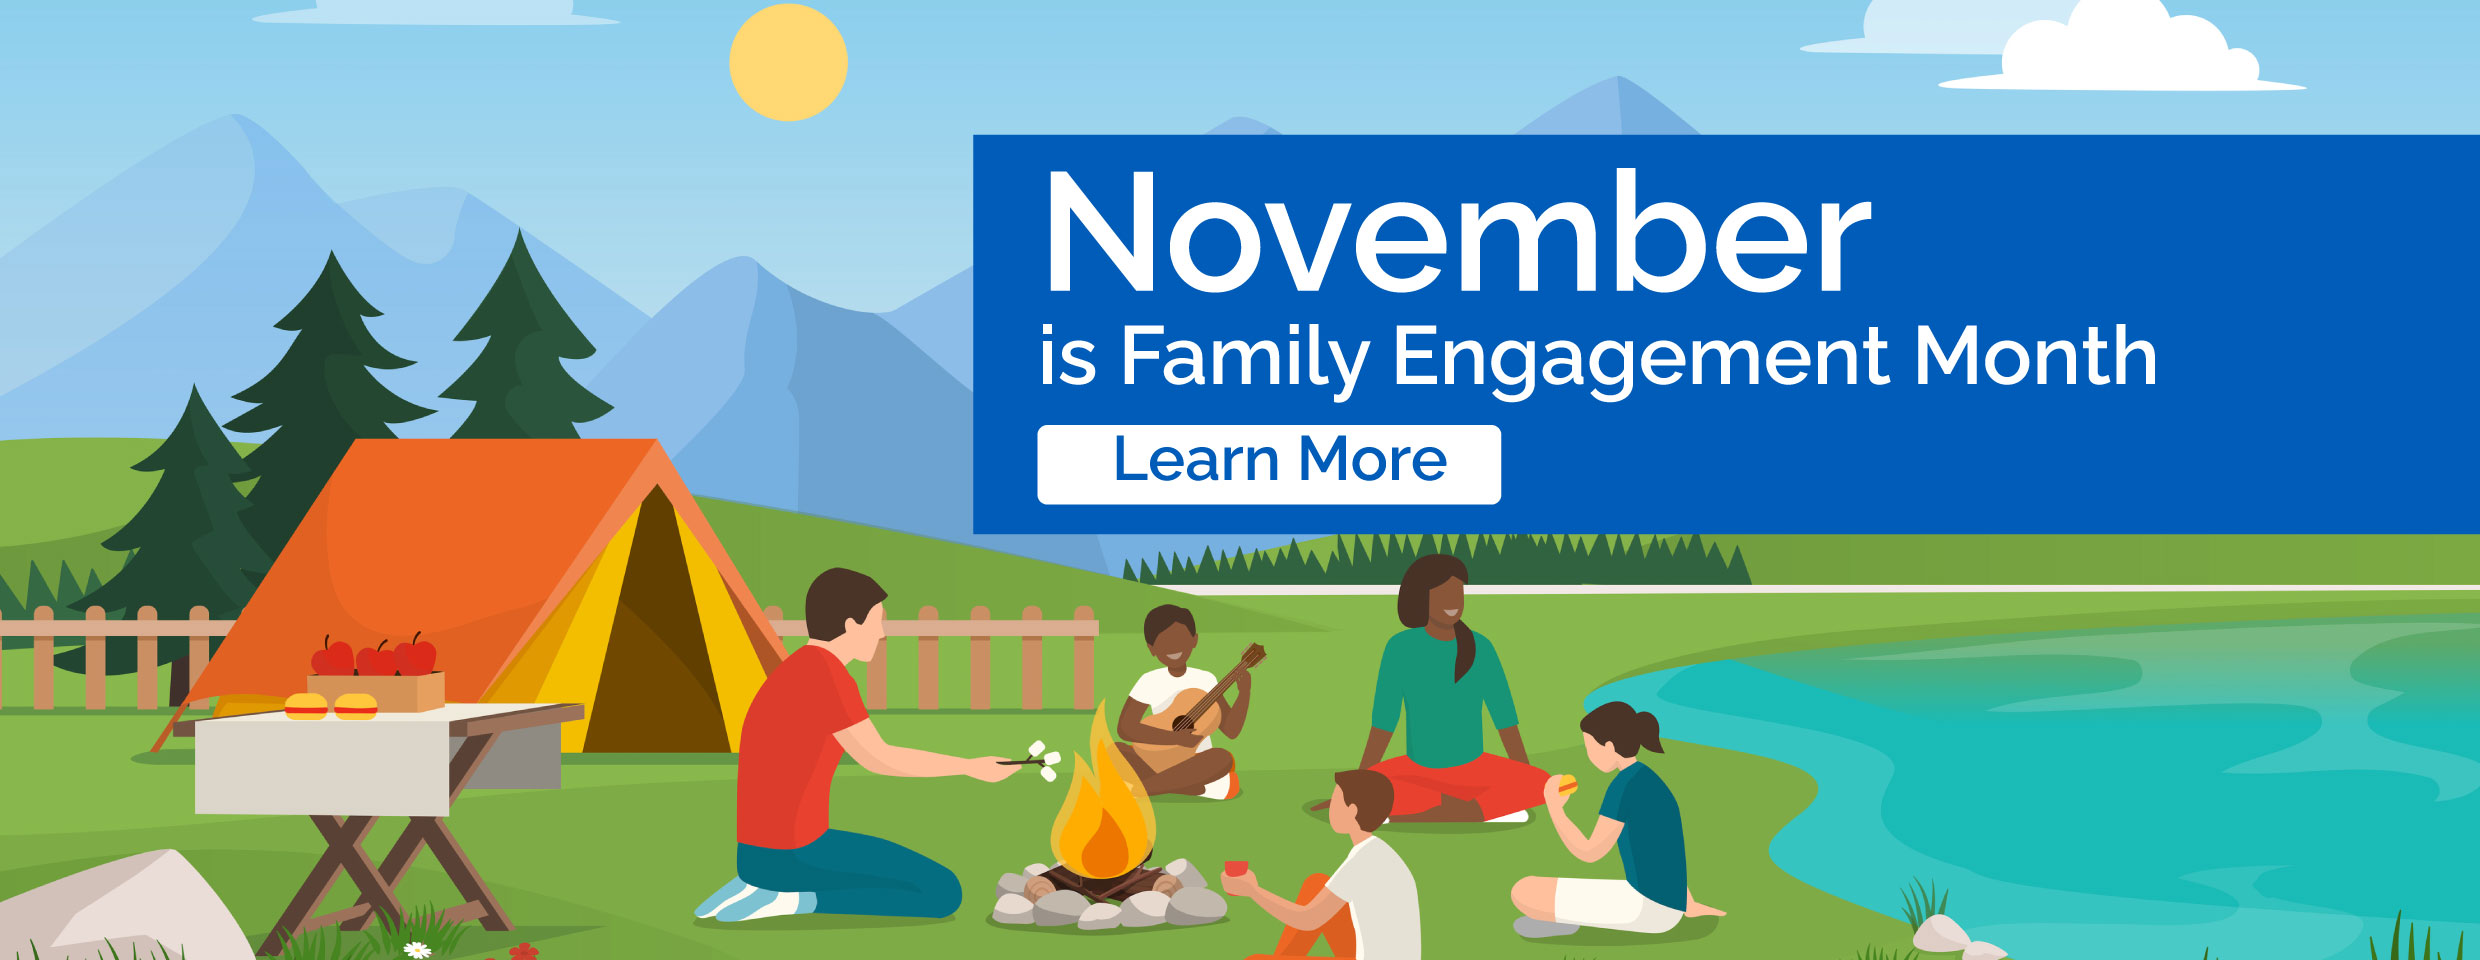 November ist der Monat des Engagements für die Familie. Erfahren Sie mehr. Die Familie sitzt am Lagerfeuer